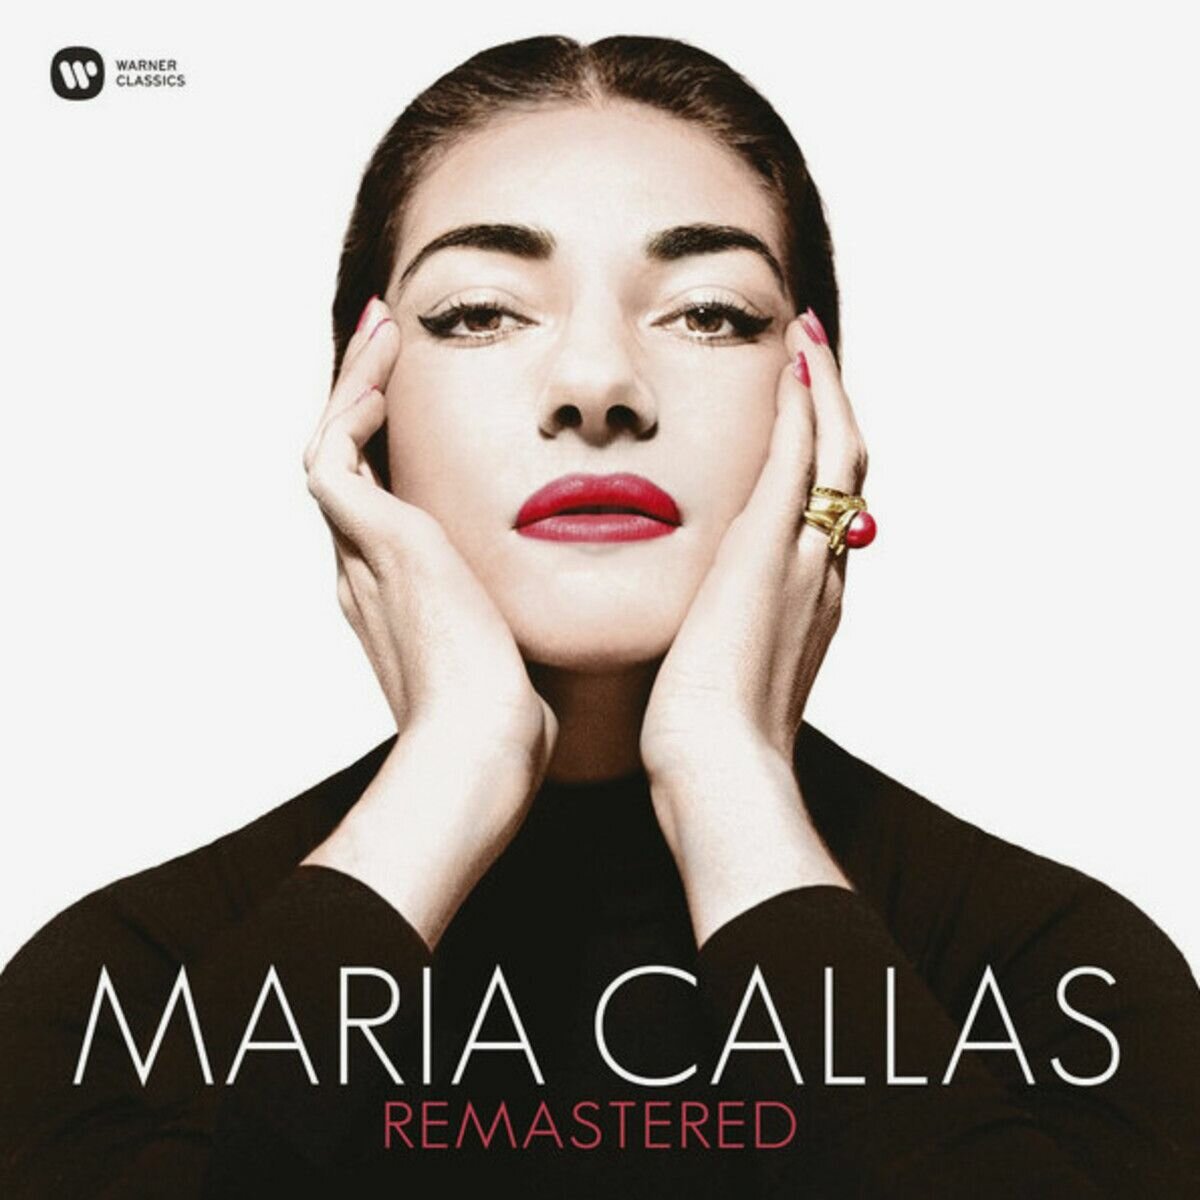 Maria Callas "Remastered" Lp